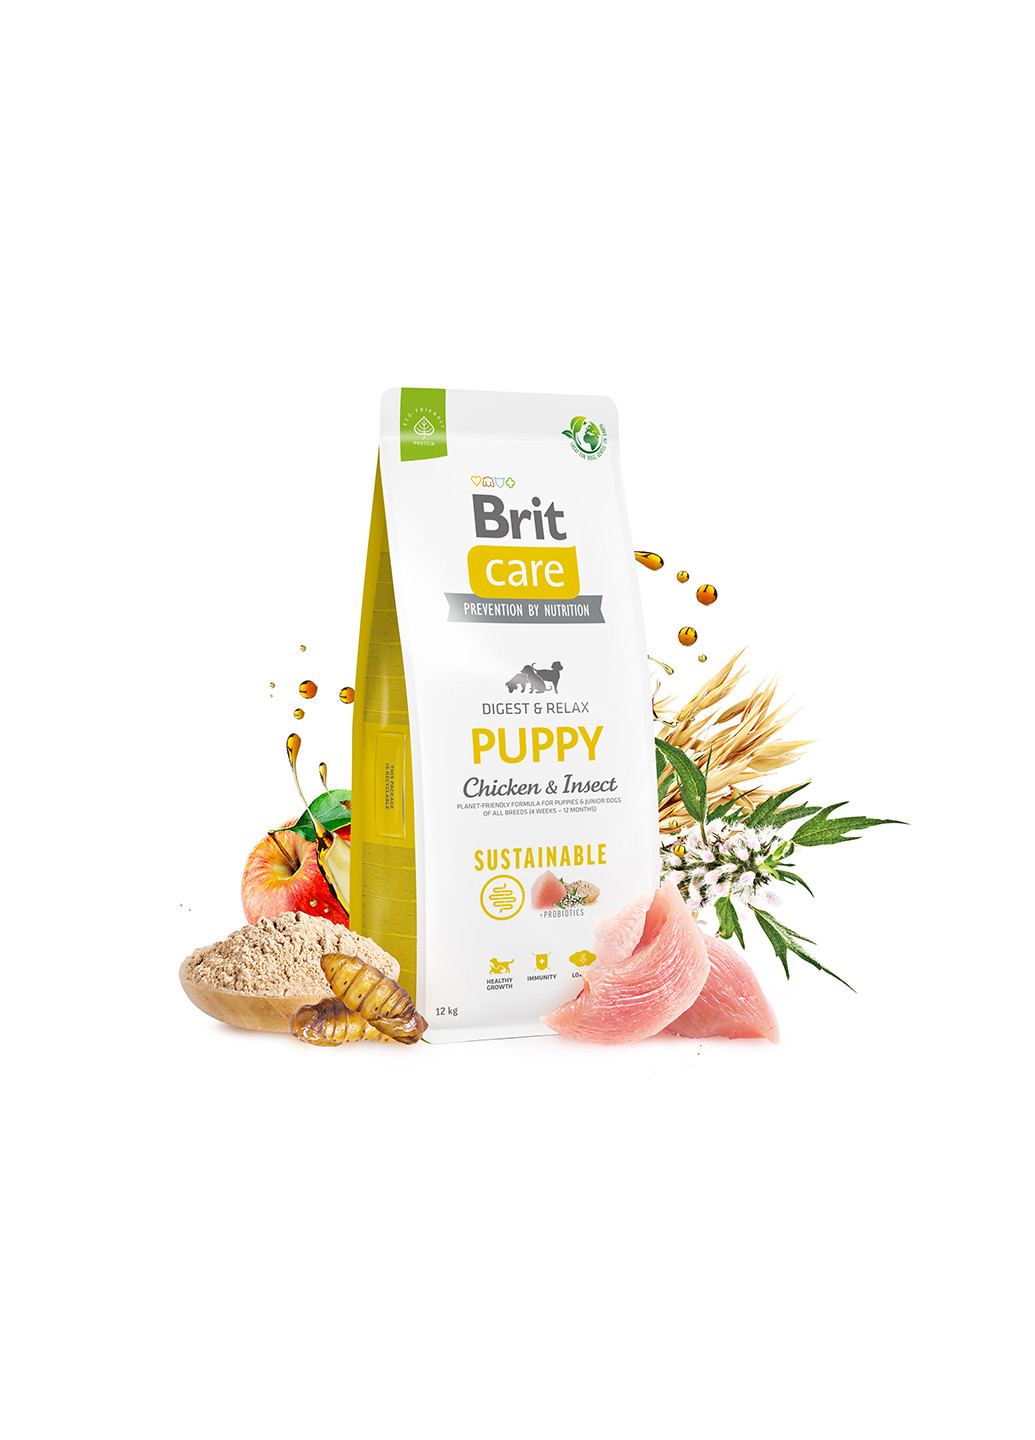 Корм для щенков Dog Sustainable Puppy с курицей и насекомыми, 3 кг Brit Care (258959219)